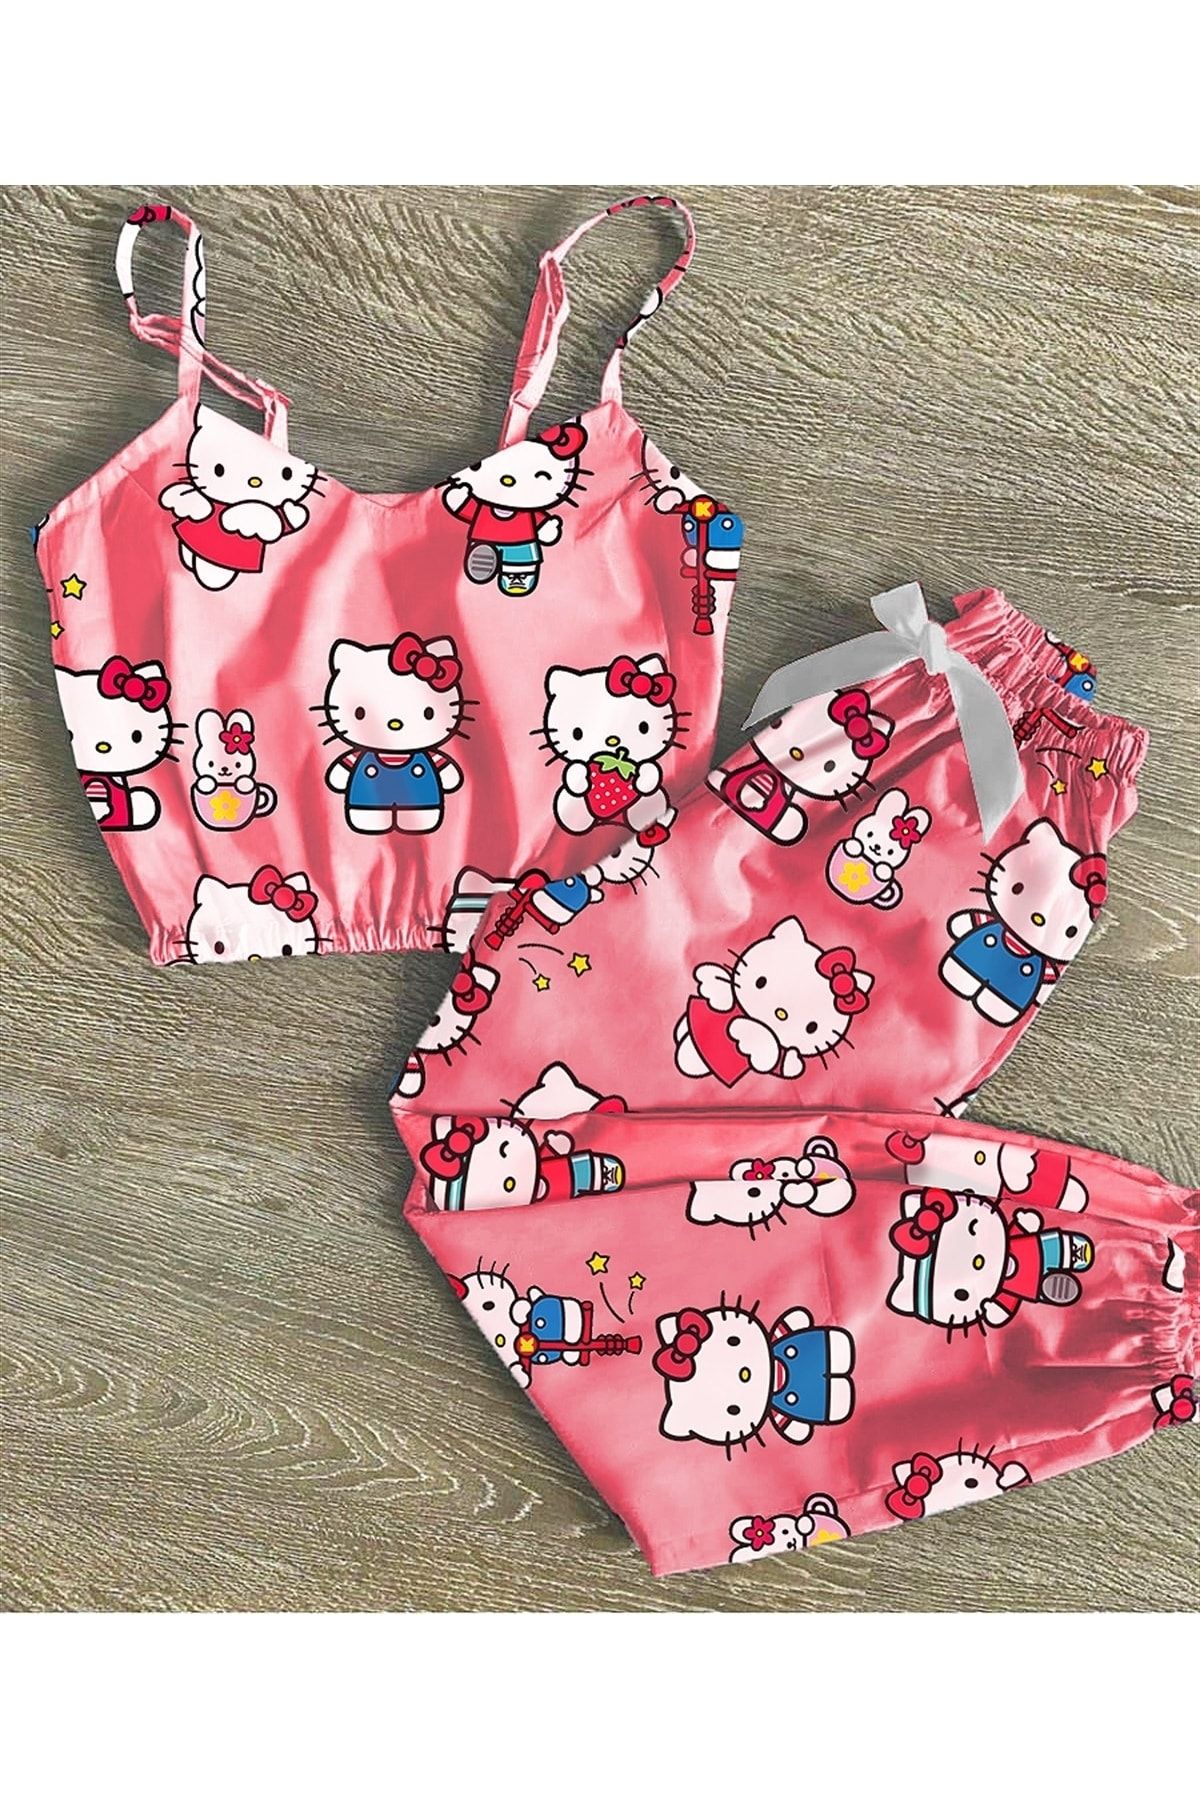 Pembishomewear Pijama Takımı Kadın Hello Kitty Pembe Fiyatı - Trendyol